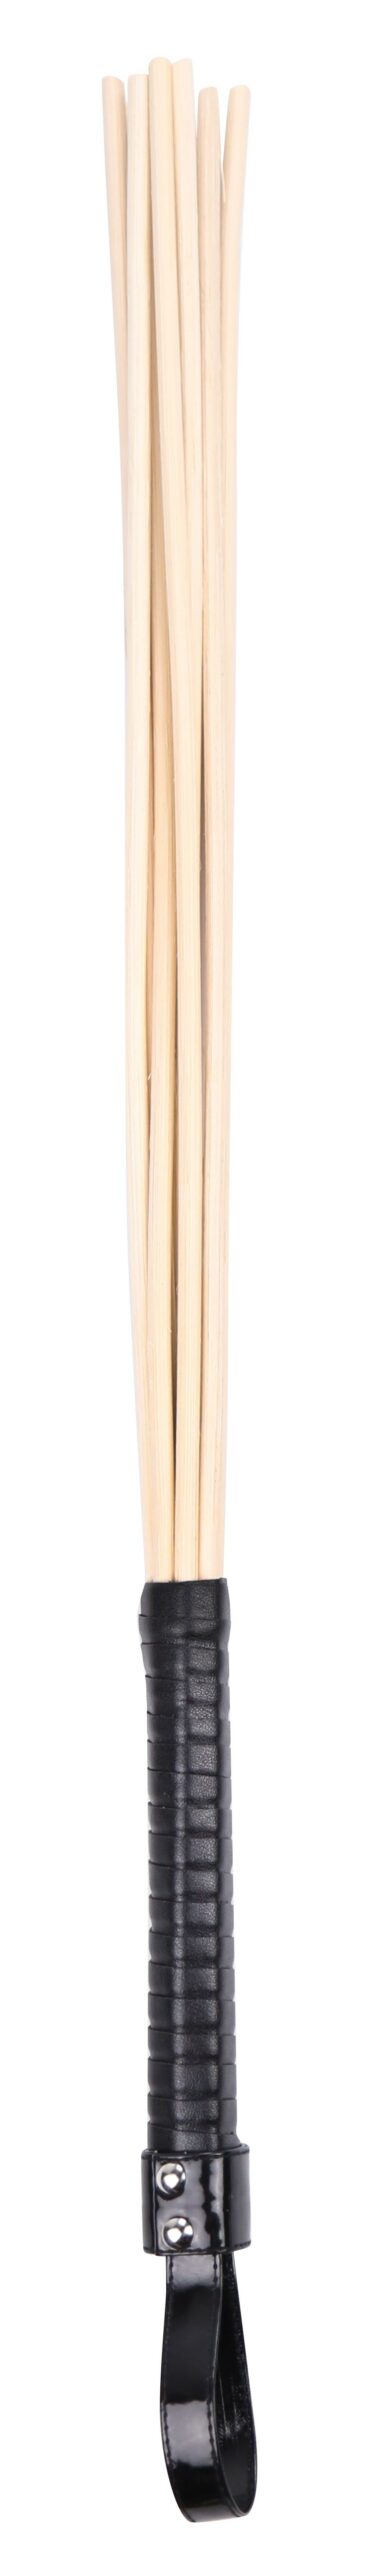 Cet accessoire est composé de 8 baguettes en bambous assemblées. Des séances de fessées plus intenses